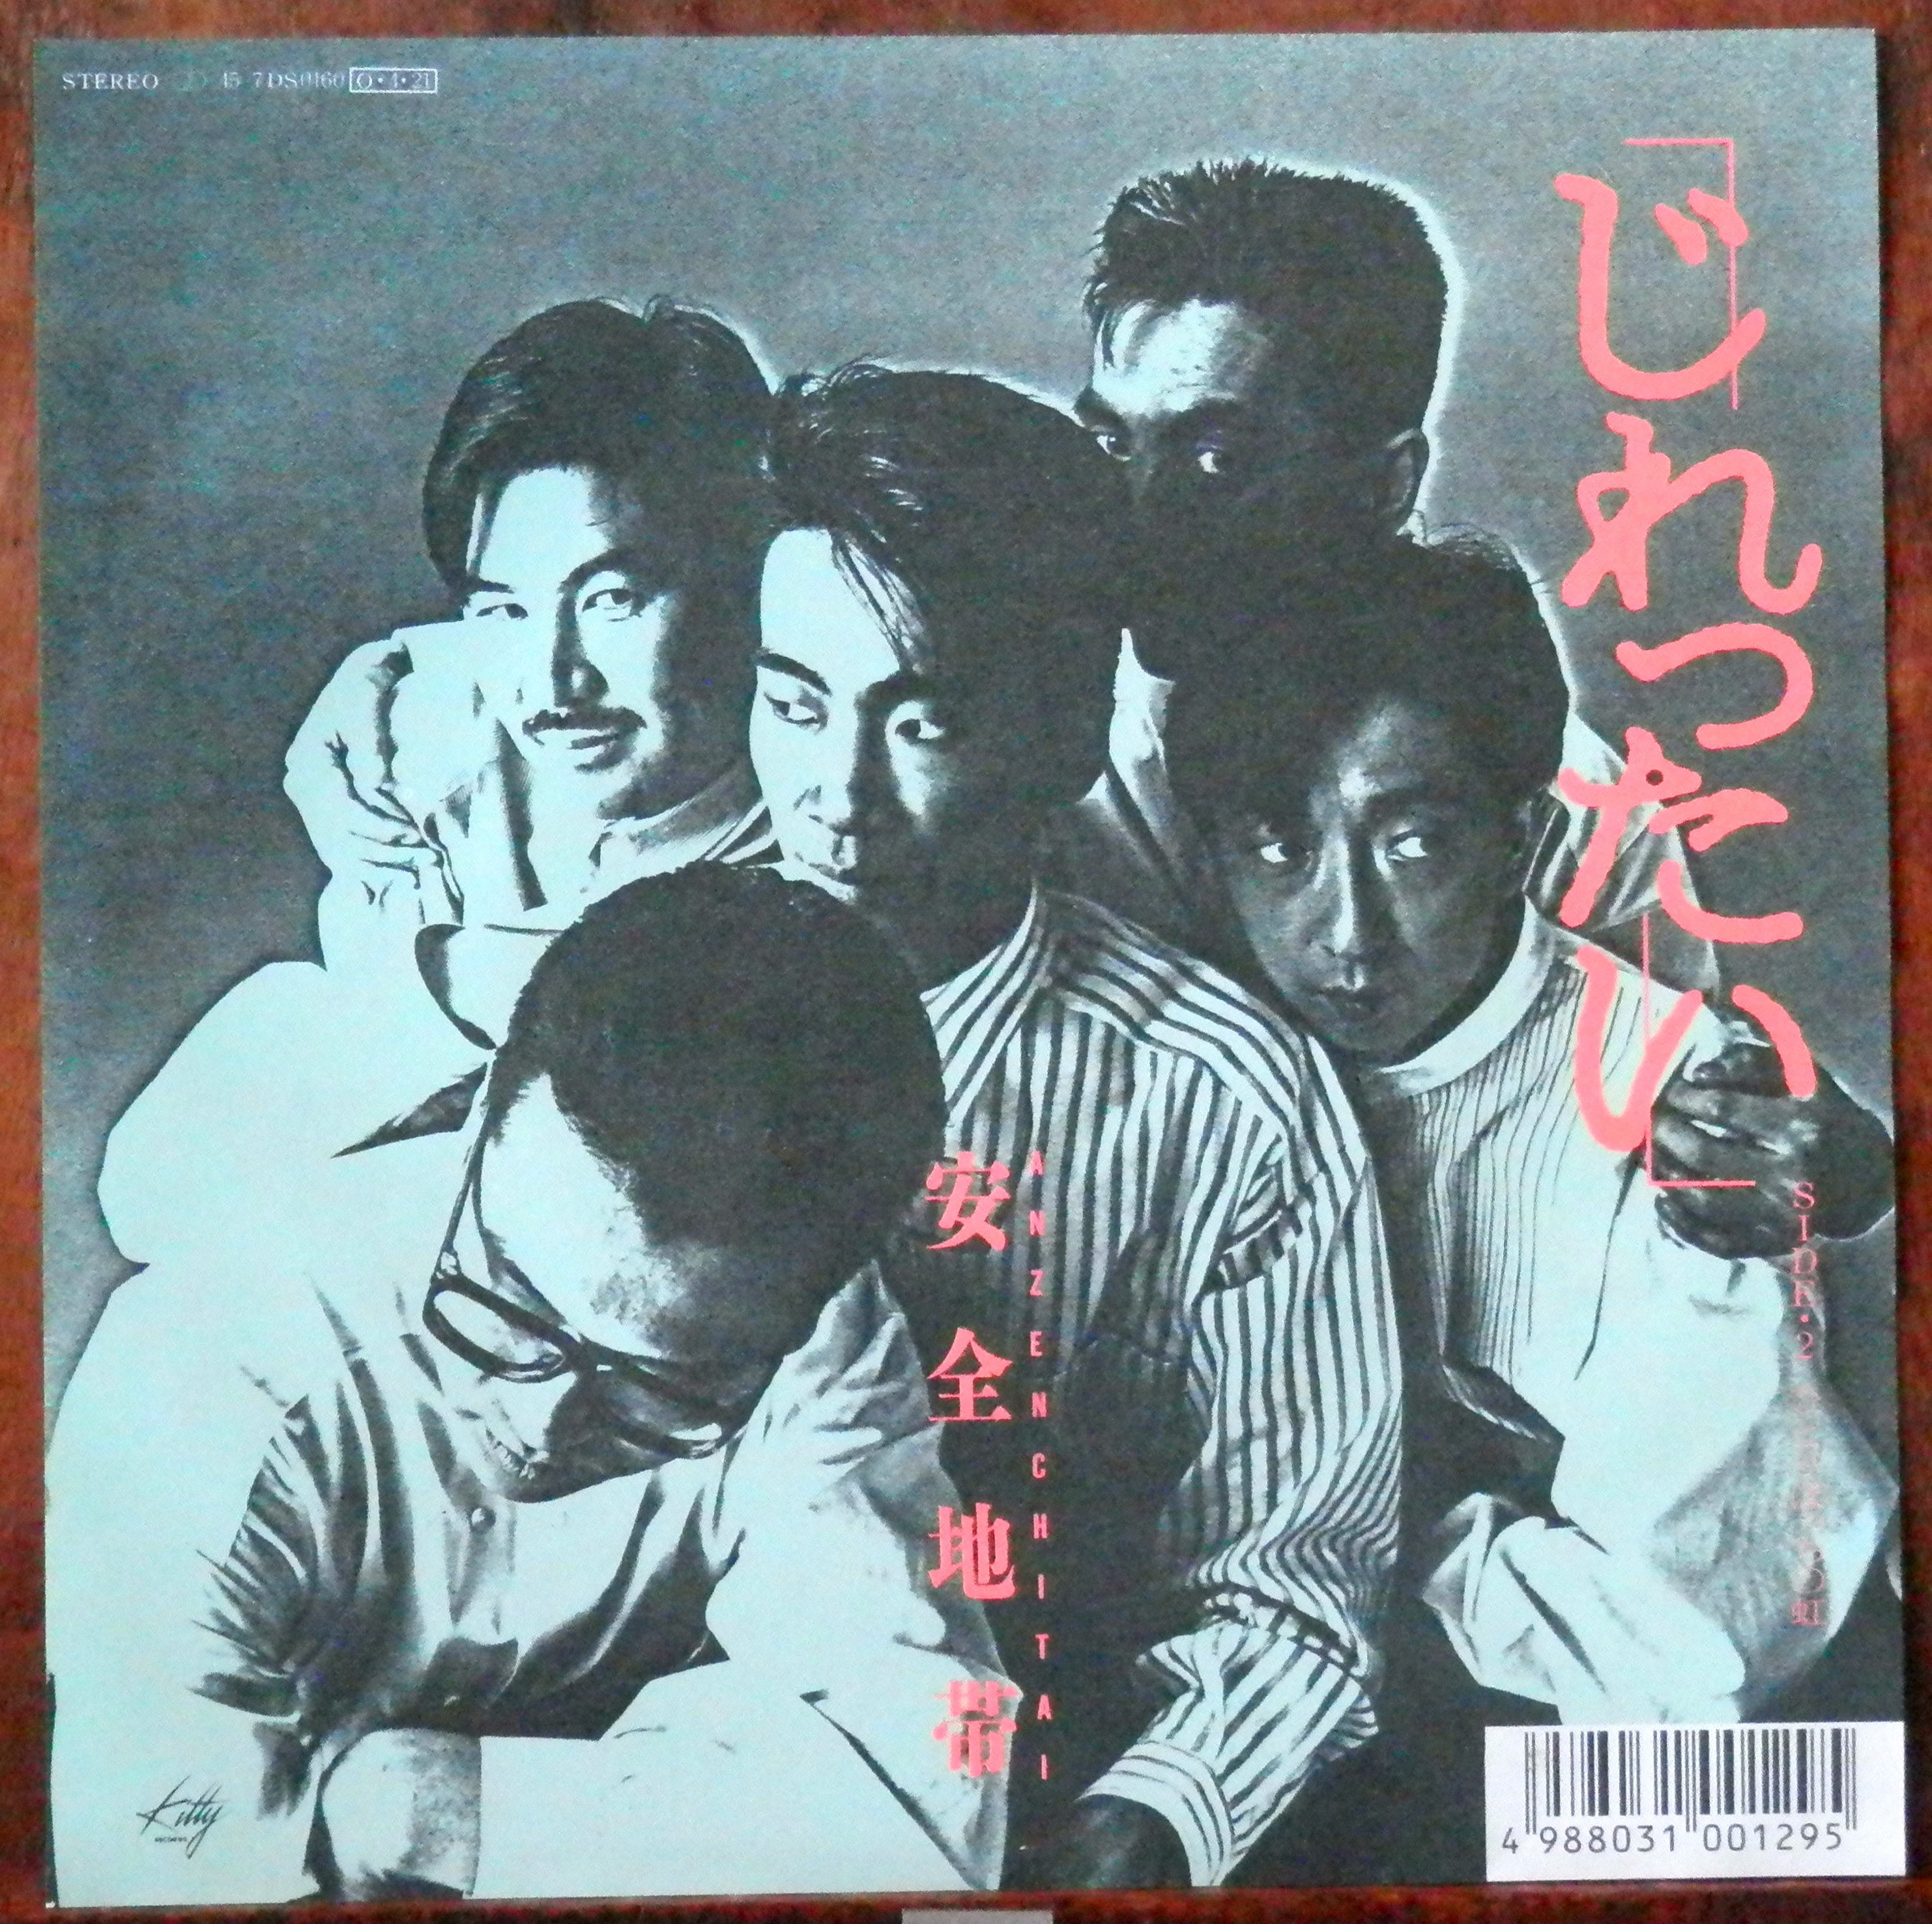 '87【EP】安全地帯 じれったい 音盤窟レコード